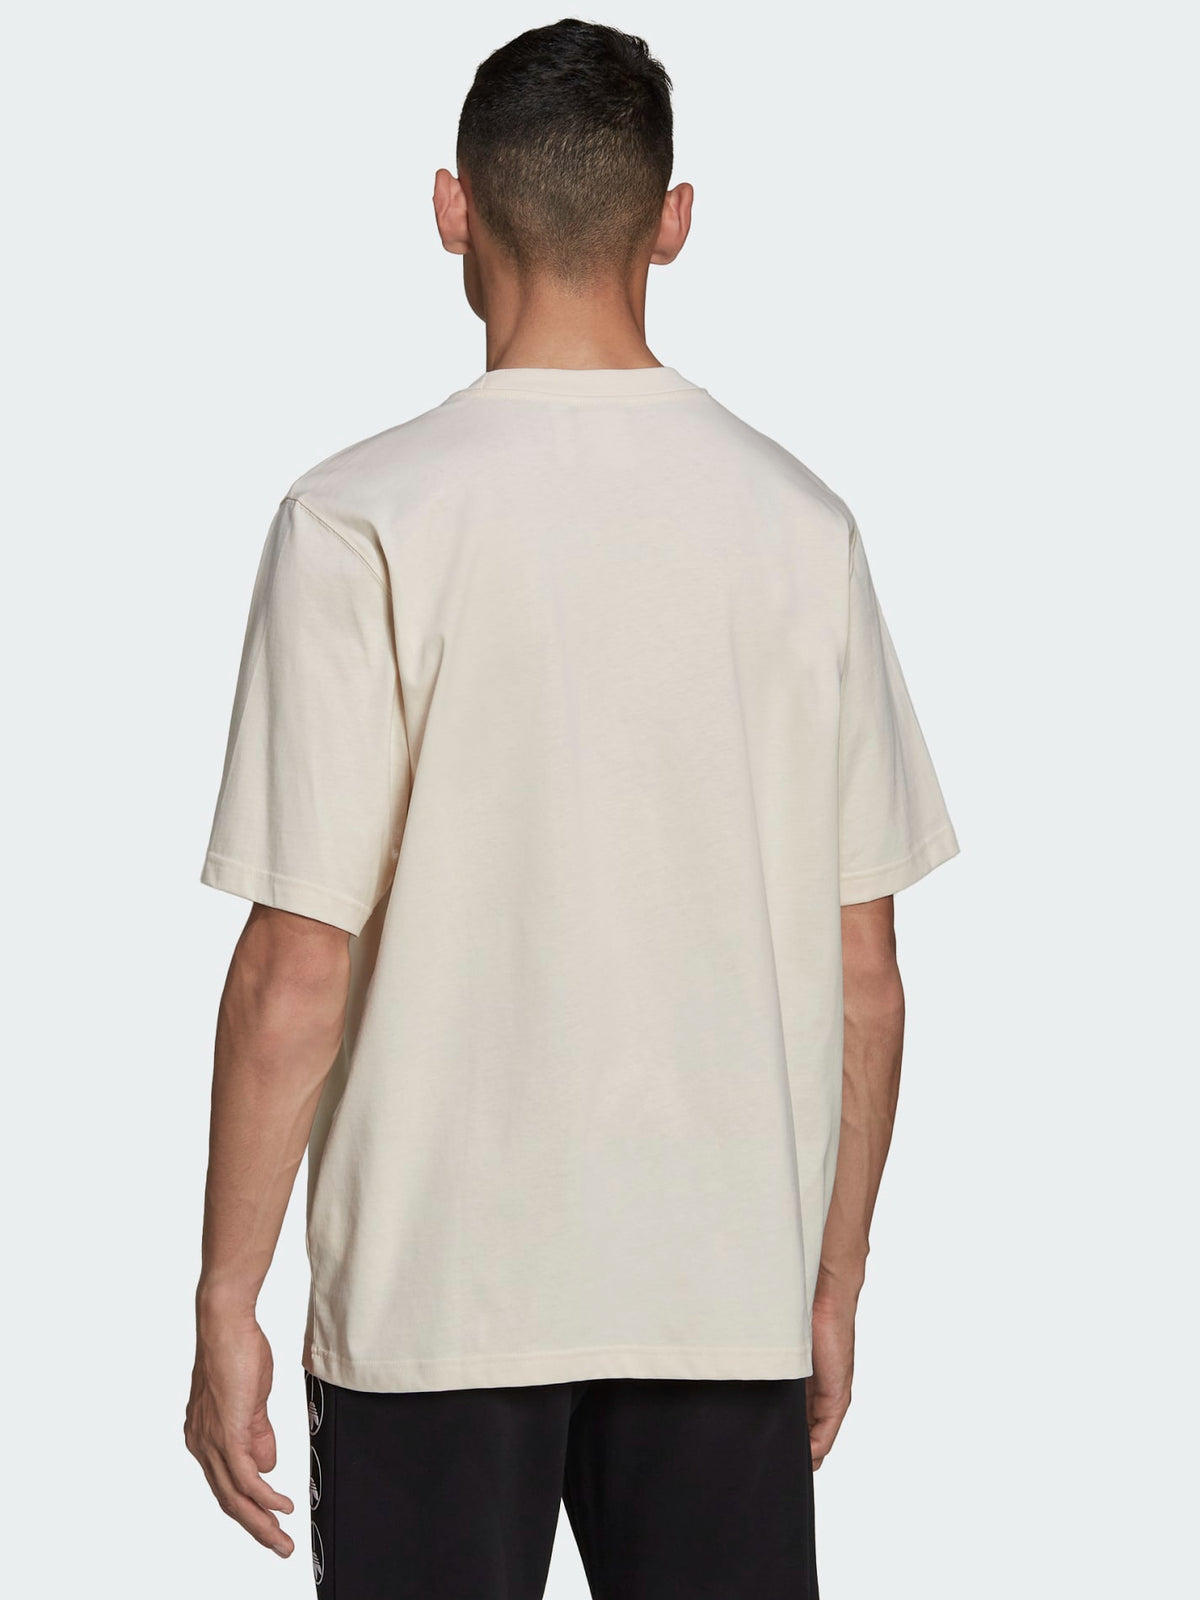 4D Cush T-Shirt in Wonder White